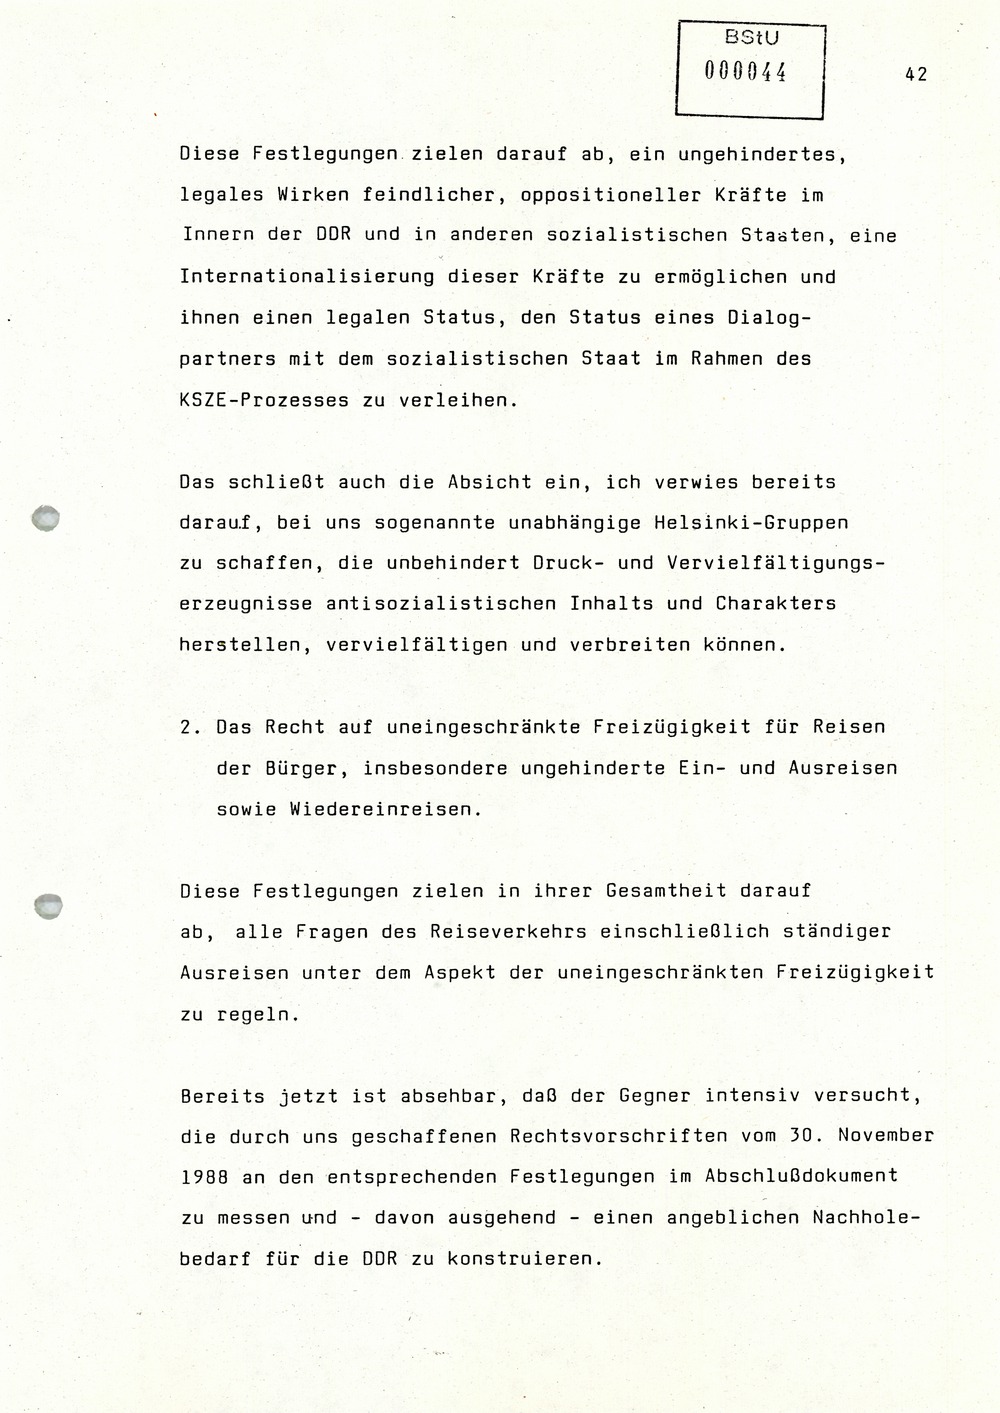 Rede Von Mielke Zur Unterzeichnung Des Abschlussdokuments Des Ksze Folgetreffens In Wien Mediathek Des Stasi Unterlagen Archivs